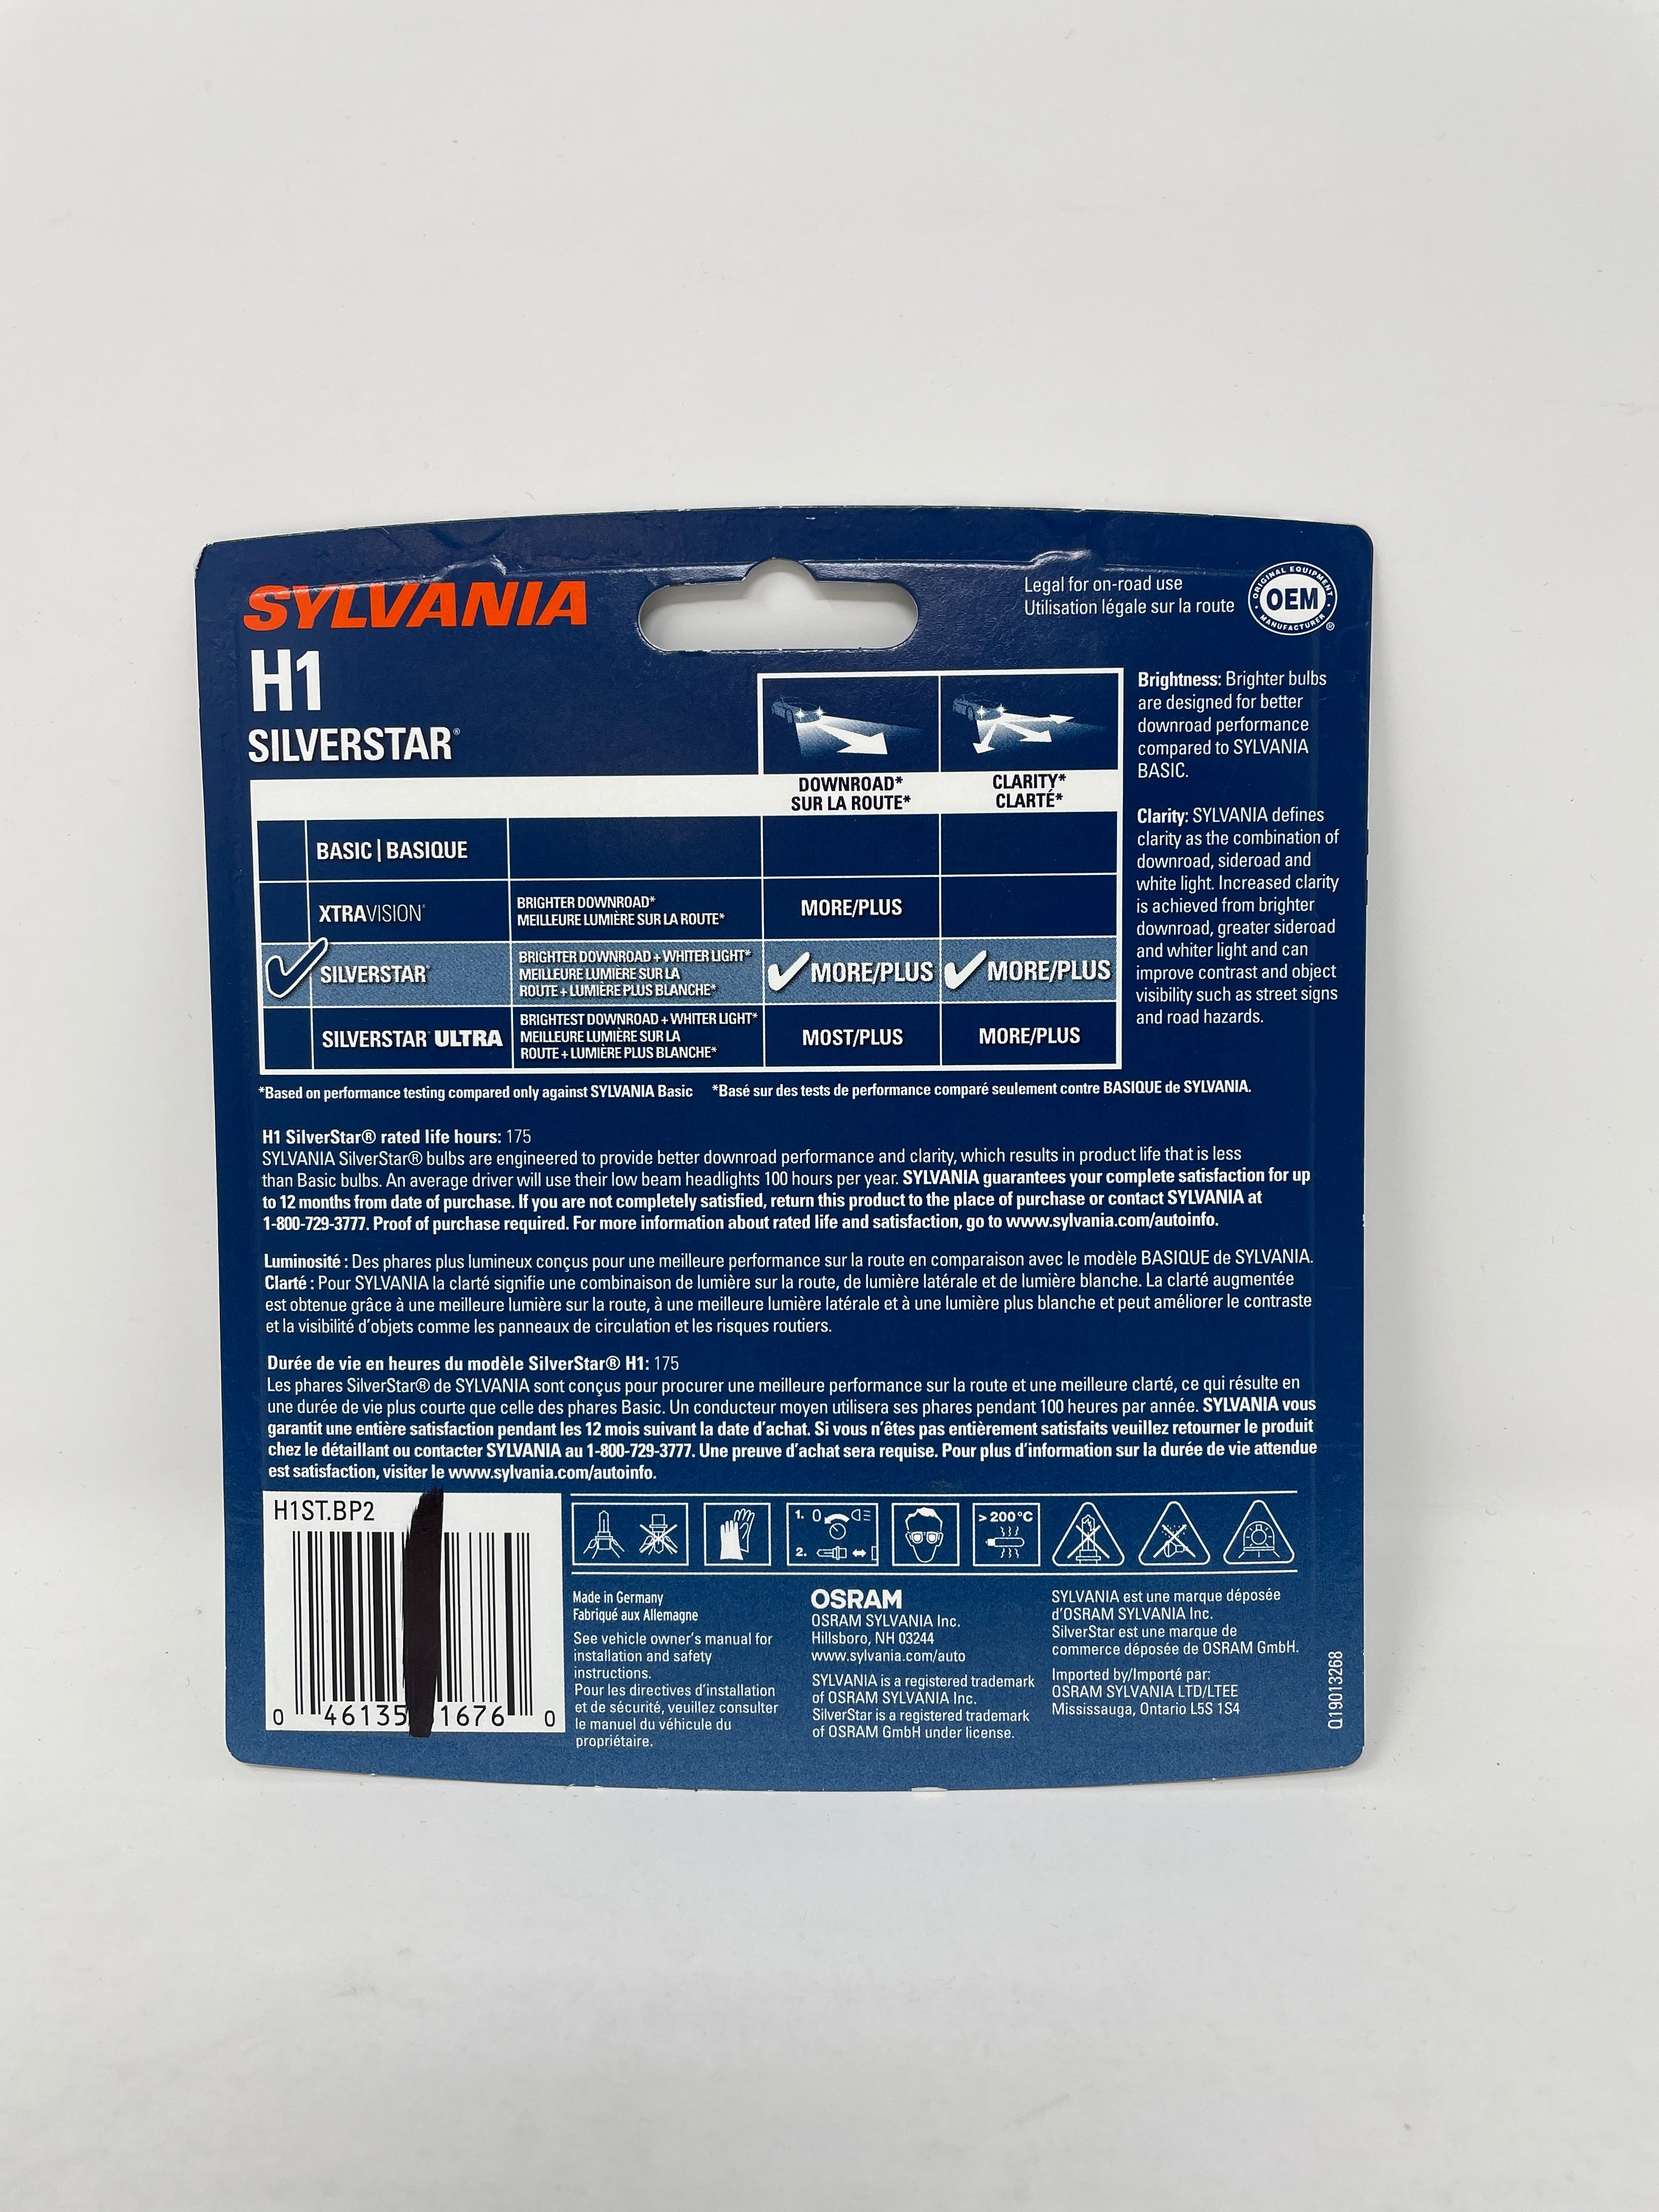 SYLVANIA H1 SilverStar High Performance Halogen Headlight Bulb, (Contains 2 Bulbs)